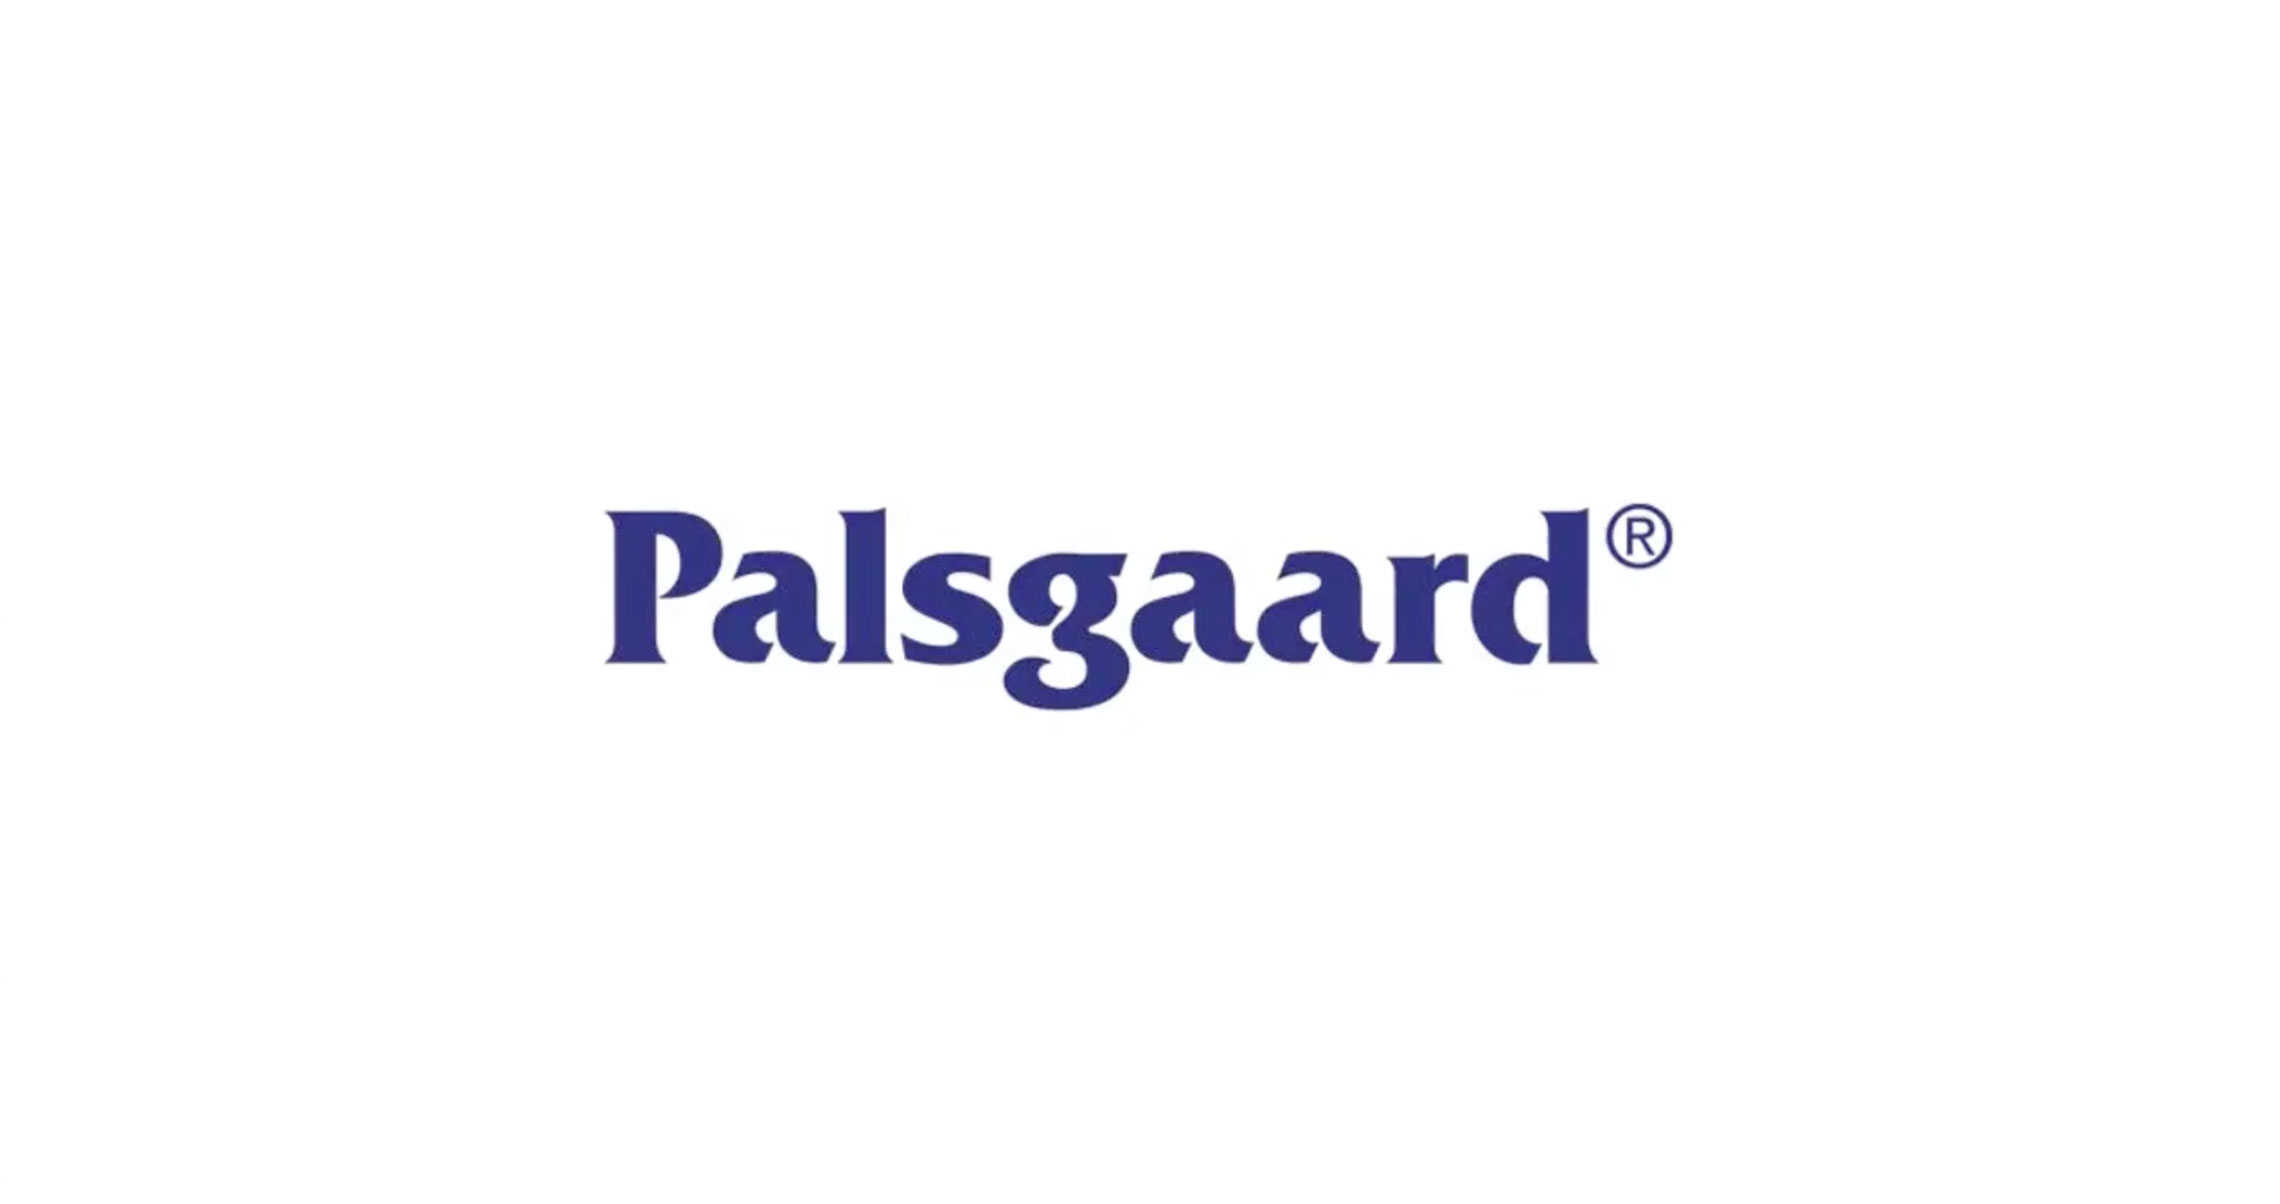 Palsgaard - #QUEDATEENCASA